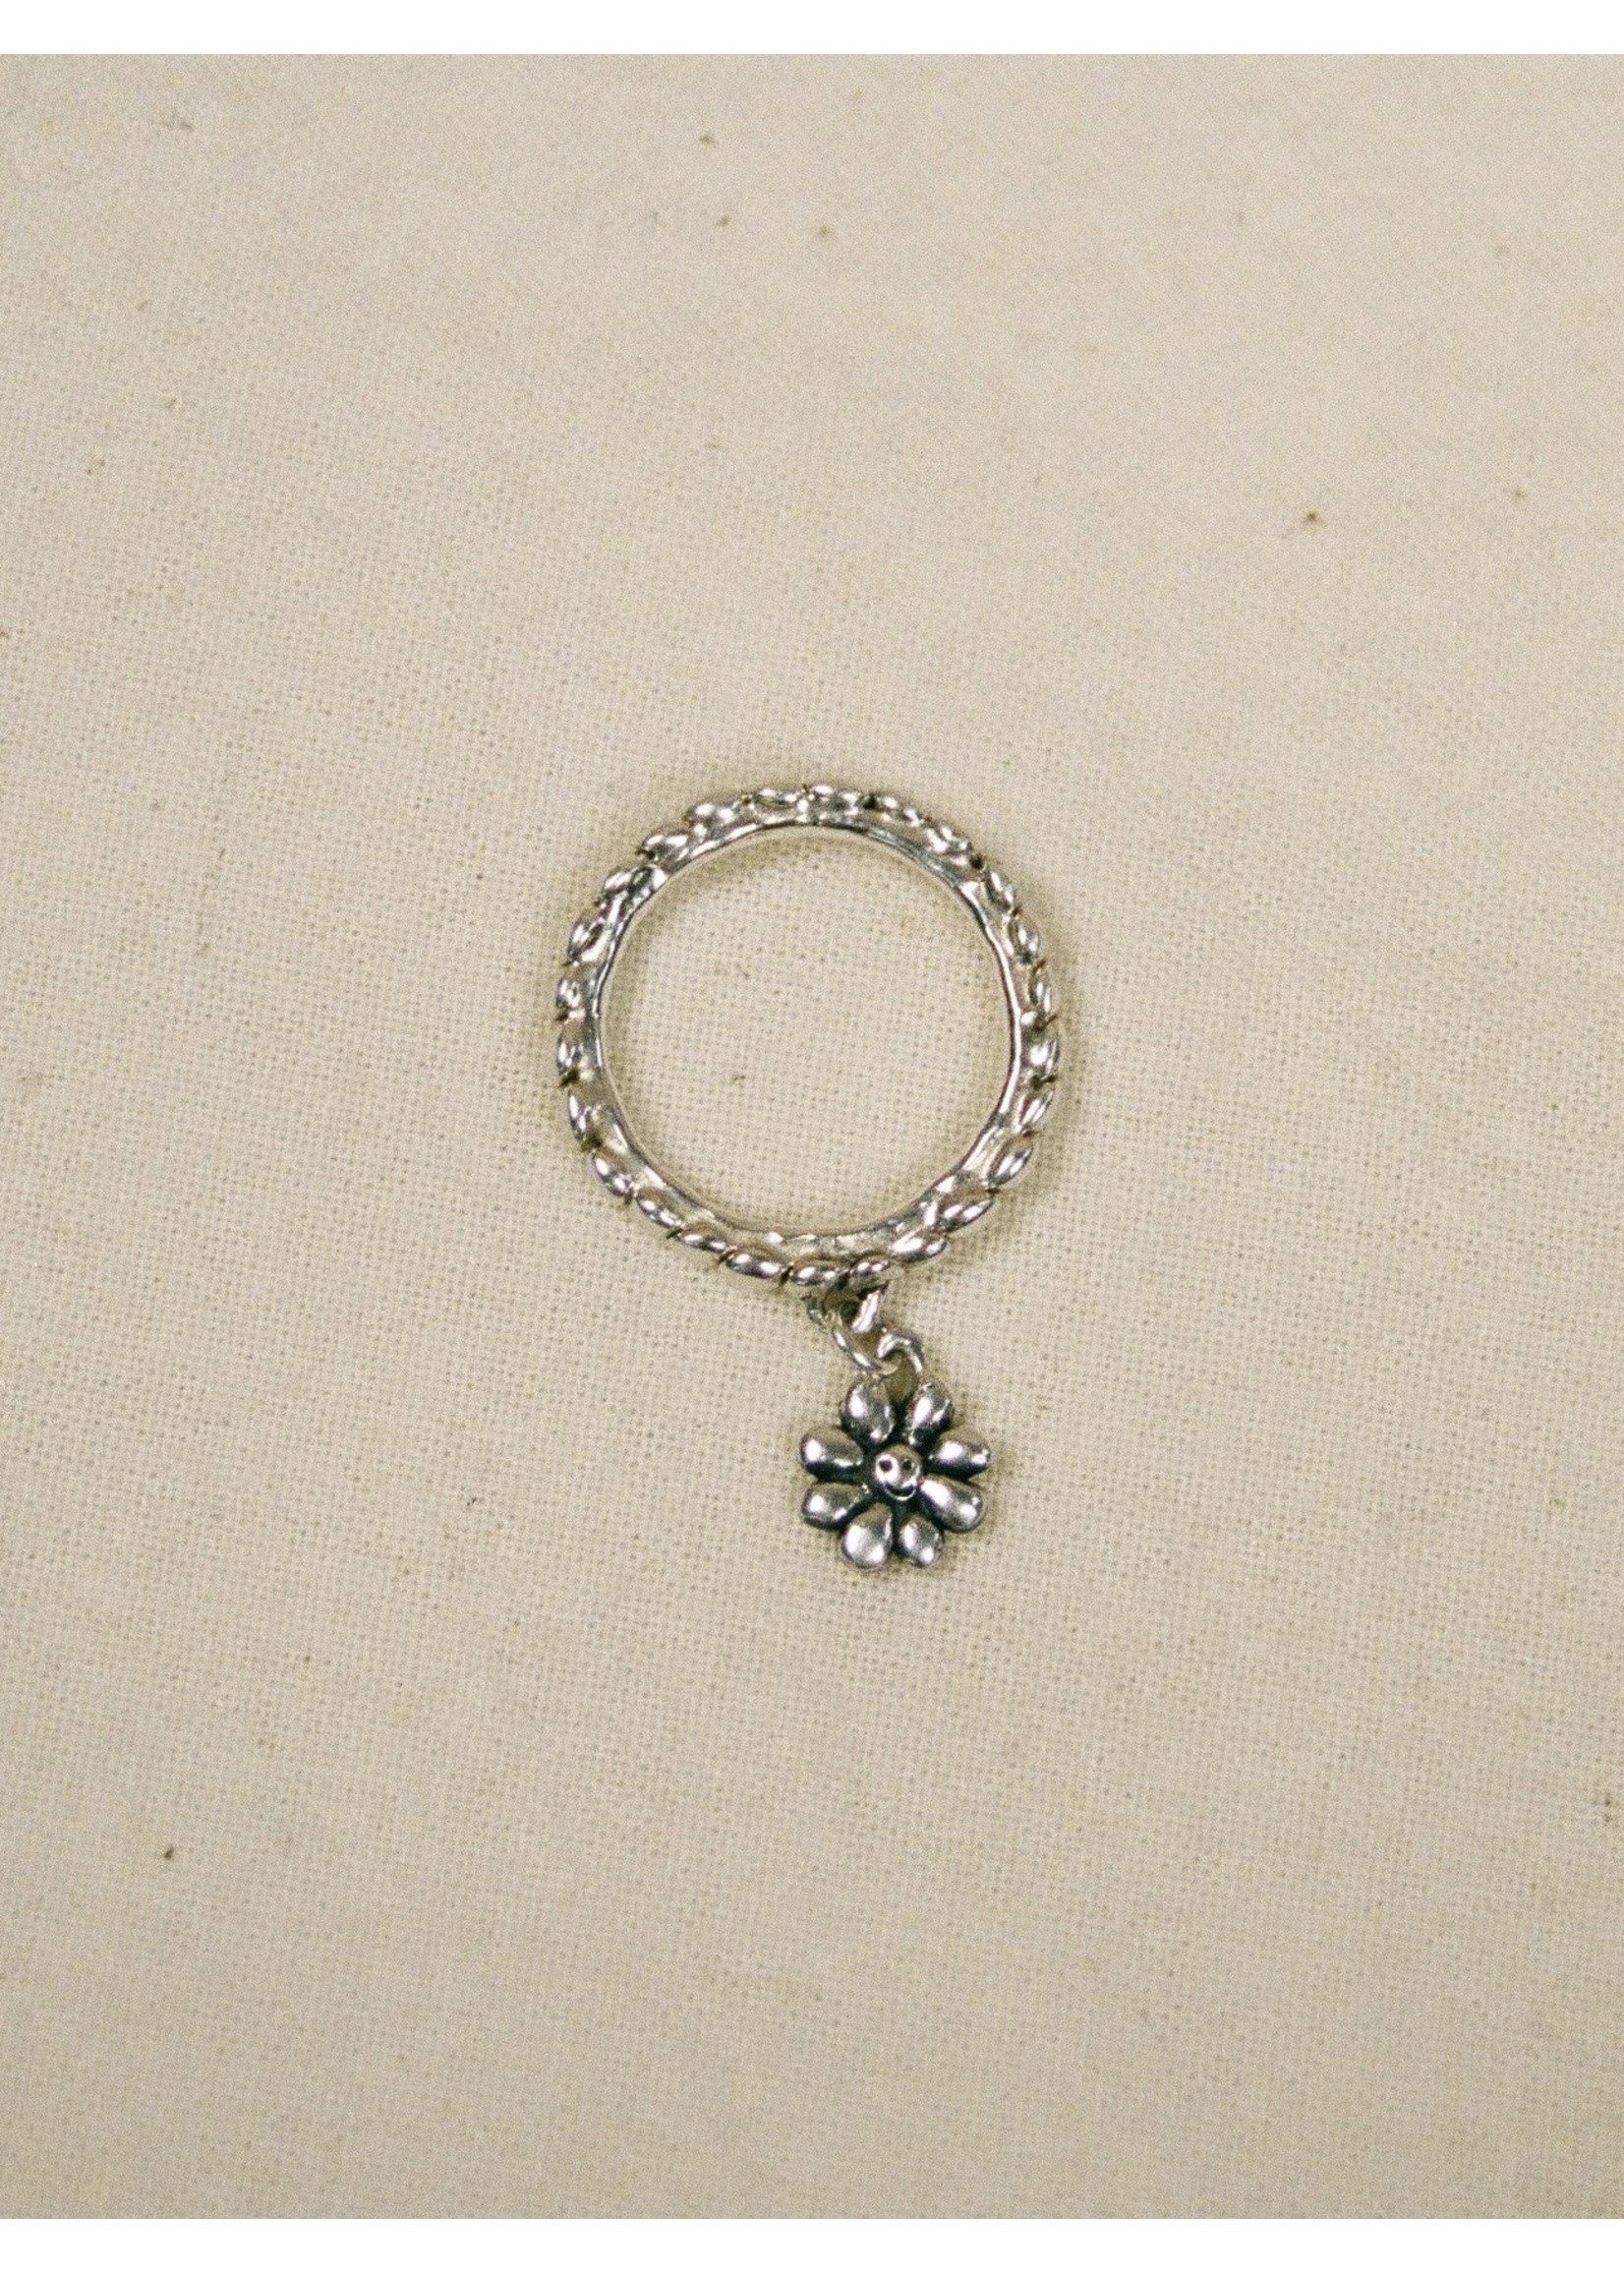 Bilak Jewellery Tiny Flower Charm Ring by Bilak Jewelry